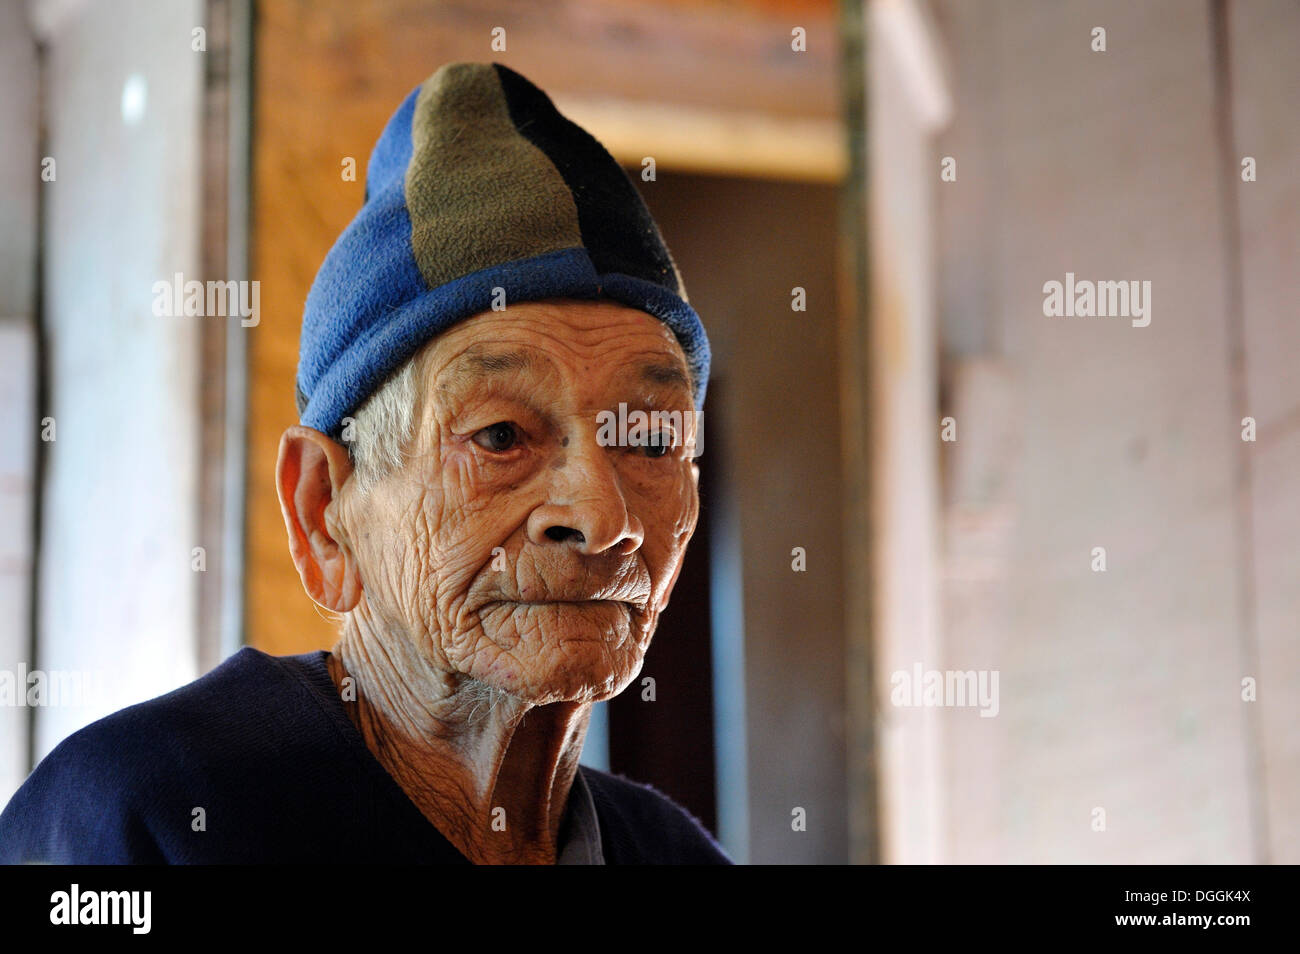 Älterer Mann trägt eine wollene Mütze, Landwirt, Portrait, Pastoreo, Caaguazu Abteilung, Paraguay Stockfoto